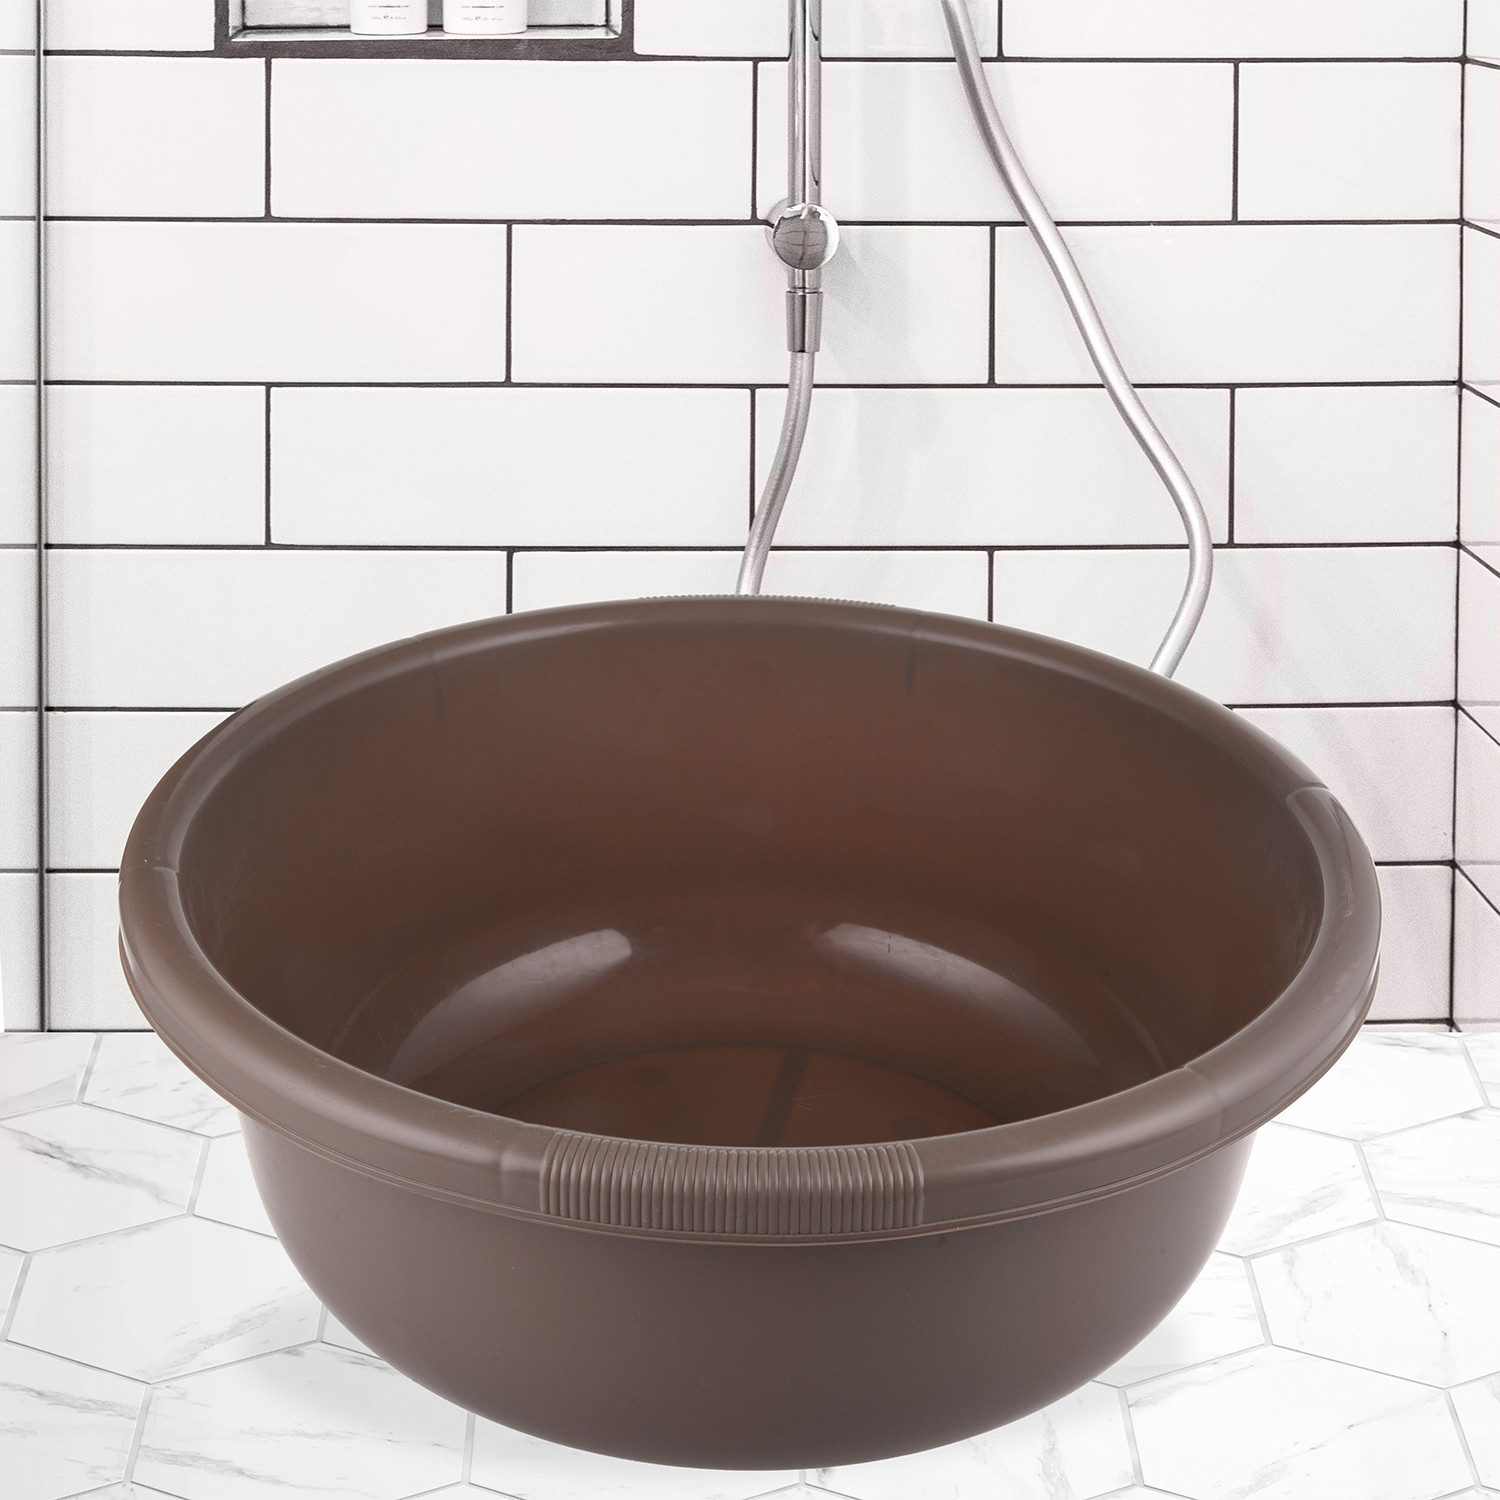 Kuber Industries Bath Tub 38|Versatile Plastic Utility Gaint Tub|Durable Deep Tub for Baby Bathing|Washing Clothes|Feeding Pan|38 Liter (Coffee)